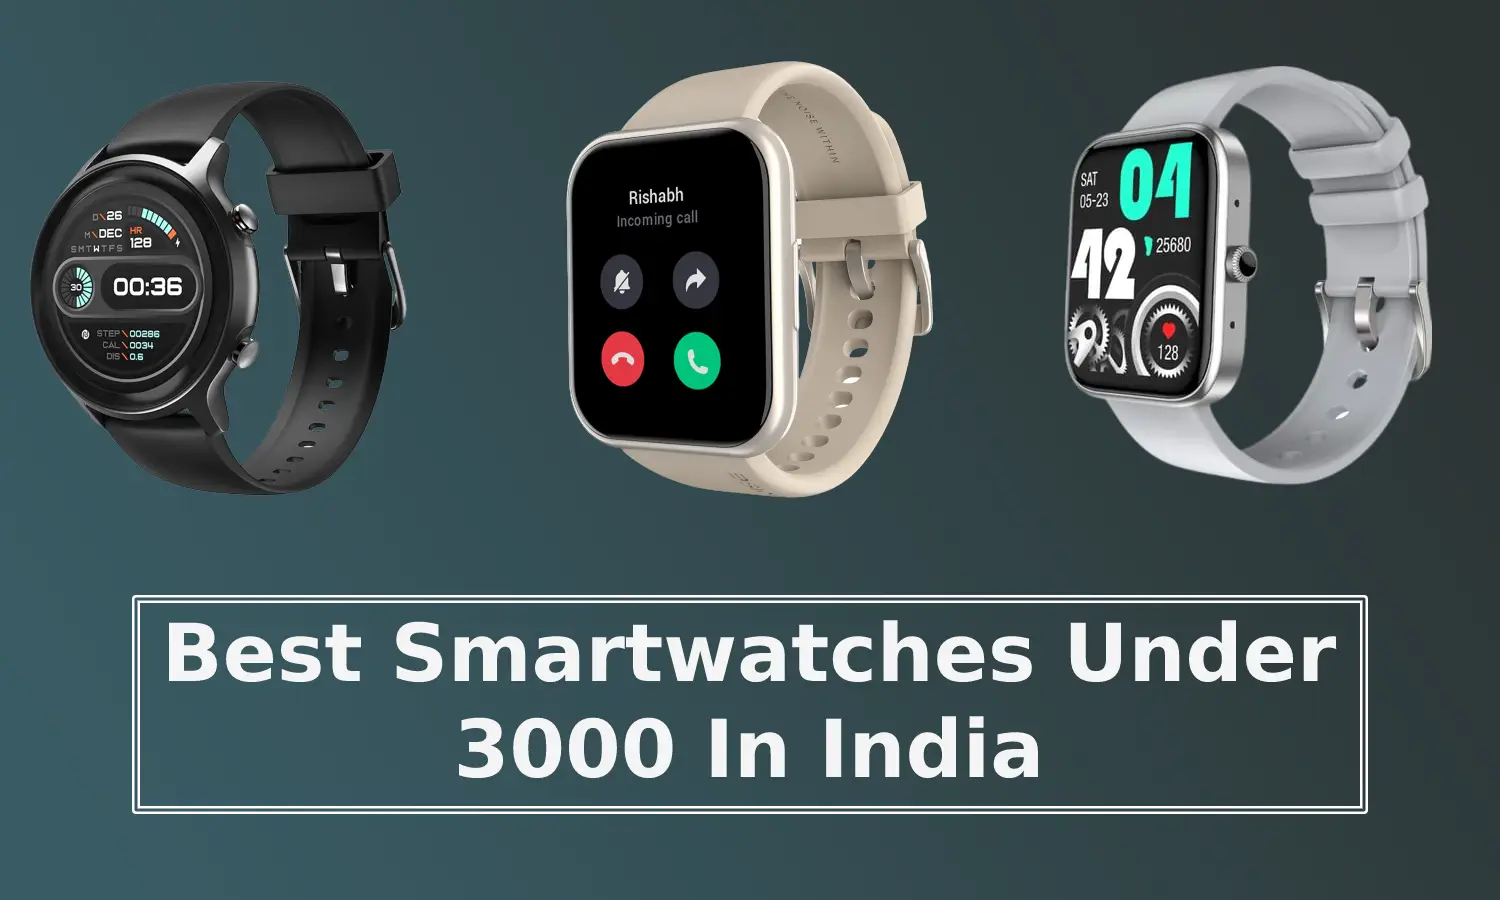 Best Smartwatches Under 3000 In India